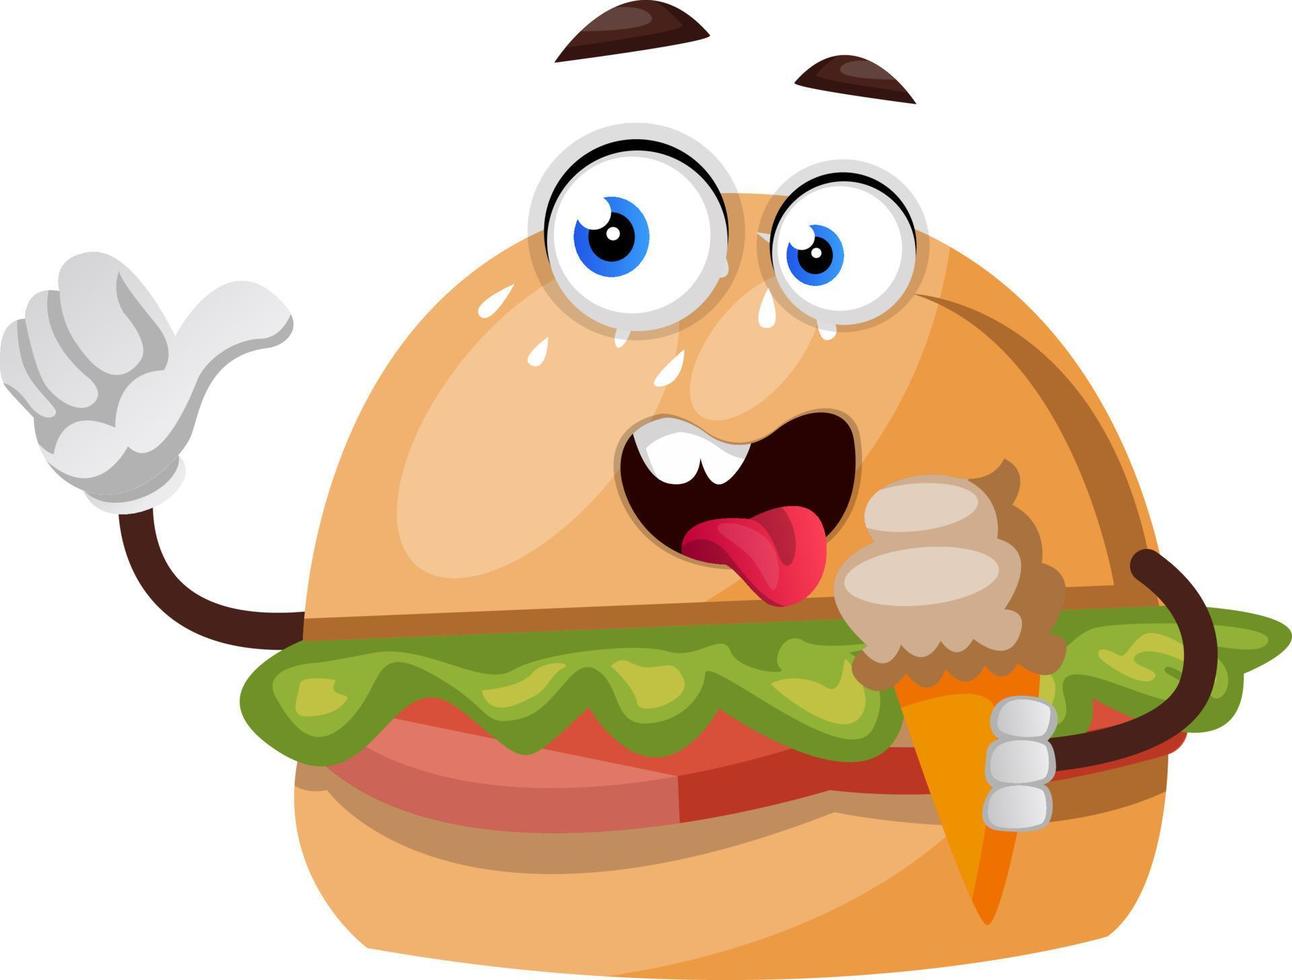 burger avec crème glacée, illustration, vecteur sur fond blanc.